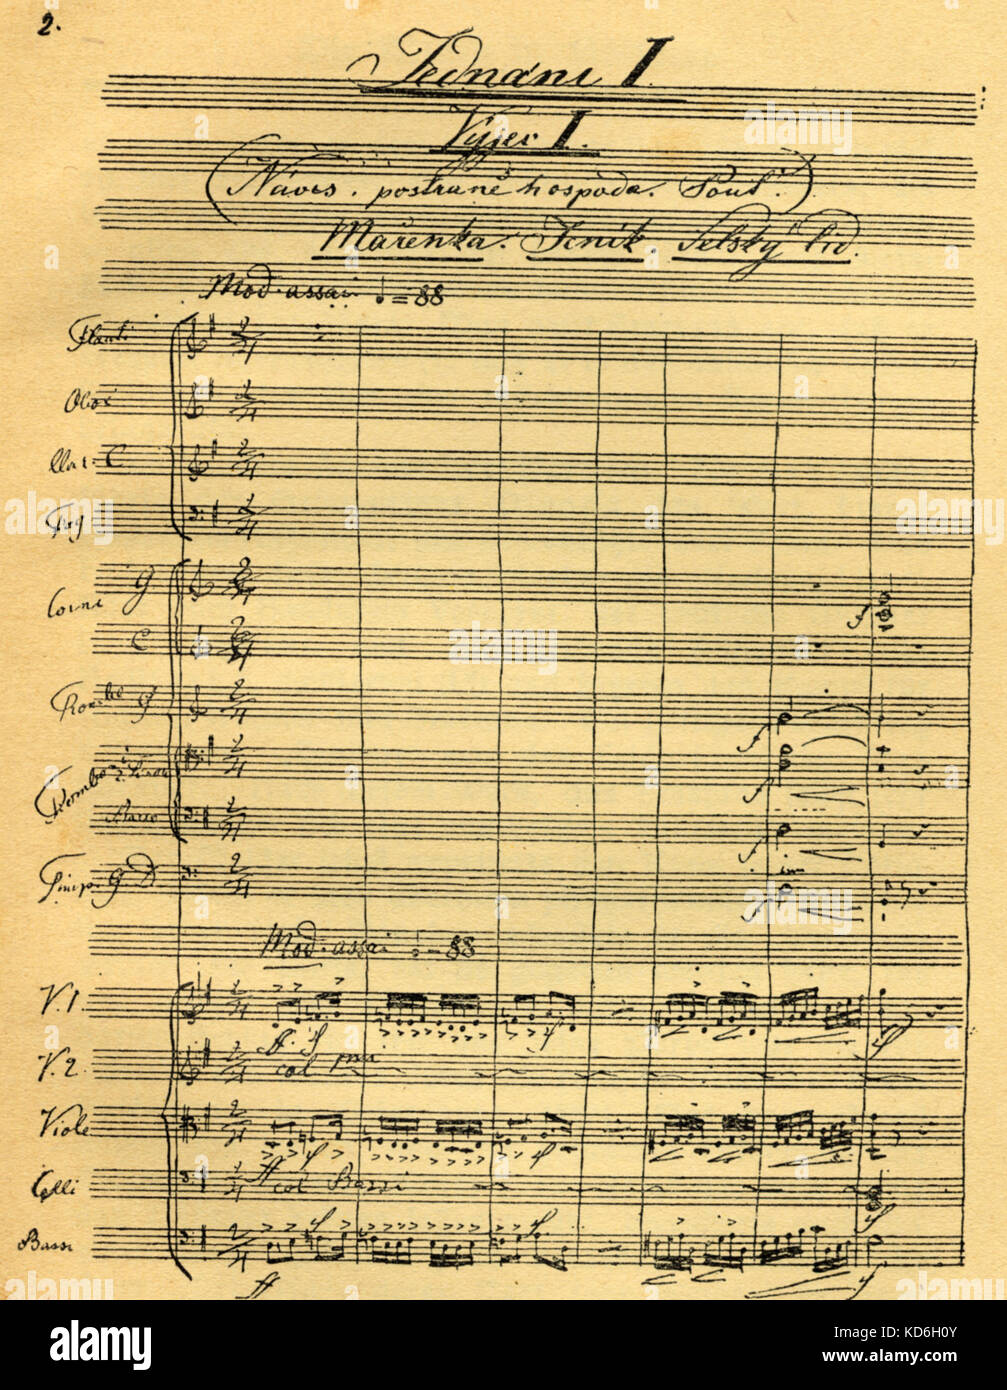 Ergebnis aus Bedrich Smetanas Oper, die Verkaufte Braut, von Beginn der ersten Akt. In der Handschrift des Komponisten' geschrieben. Böhmische Komponist, 1824-1884 Stockfoto